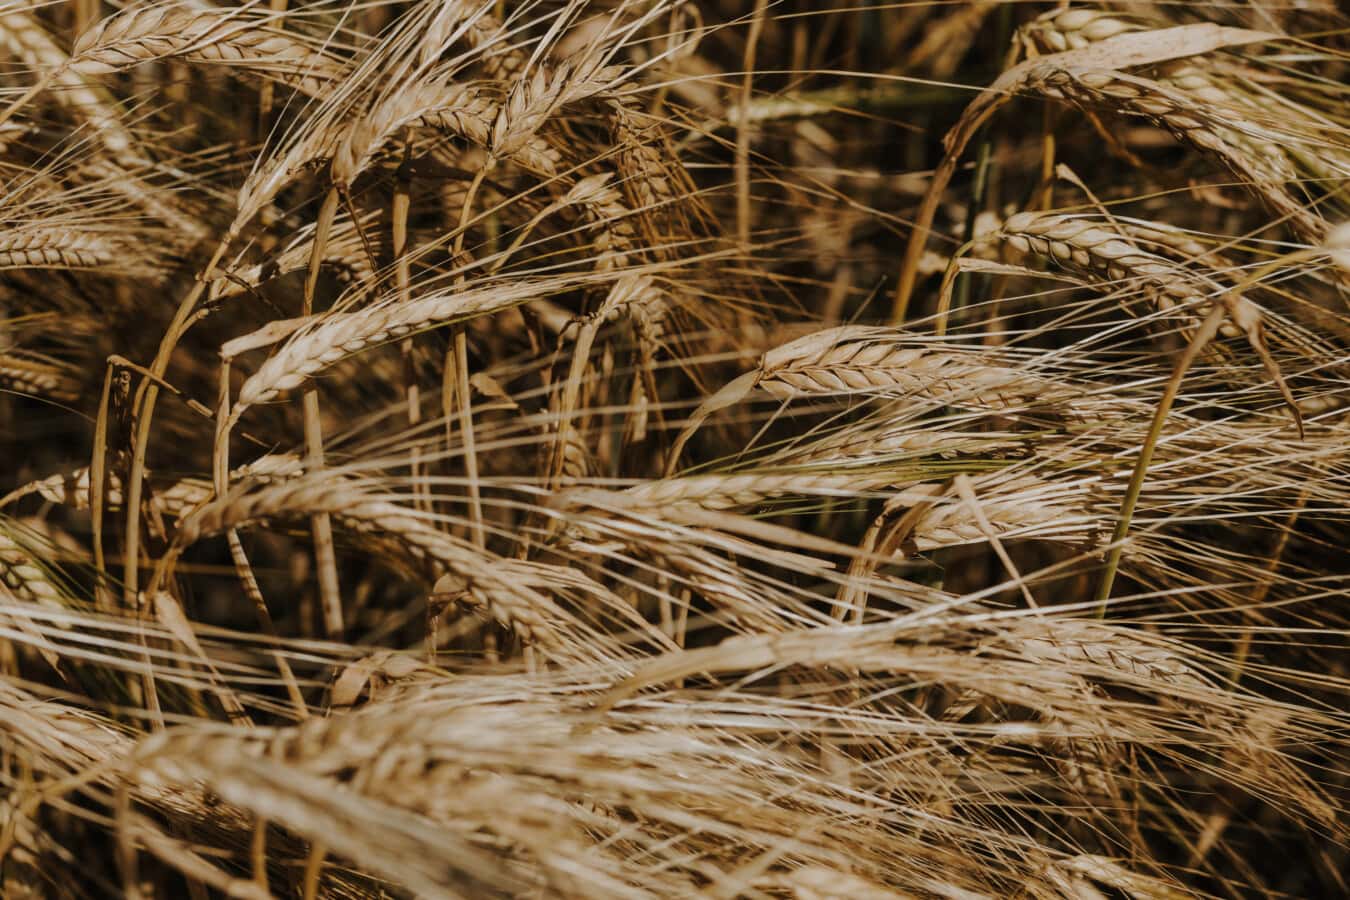 Wheatfield, semilla, paja de, contacto directo, trigo, cereales, estación seca, grano, verano, pan